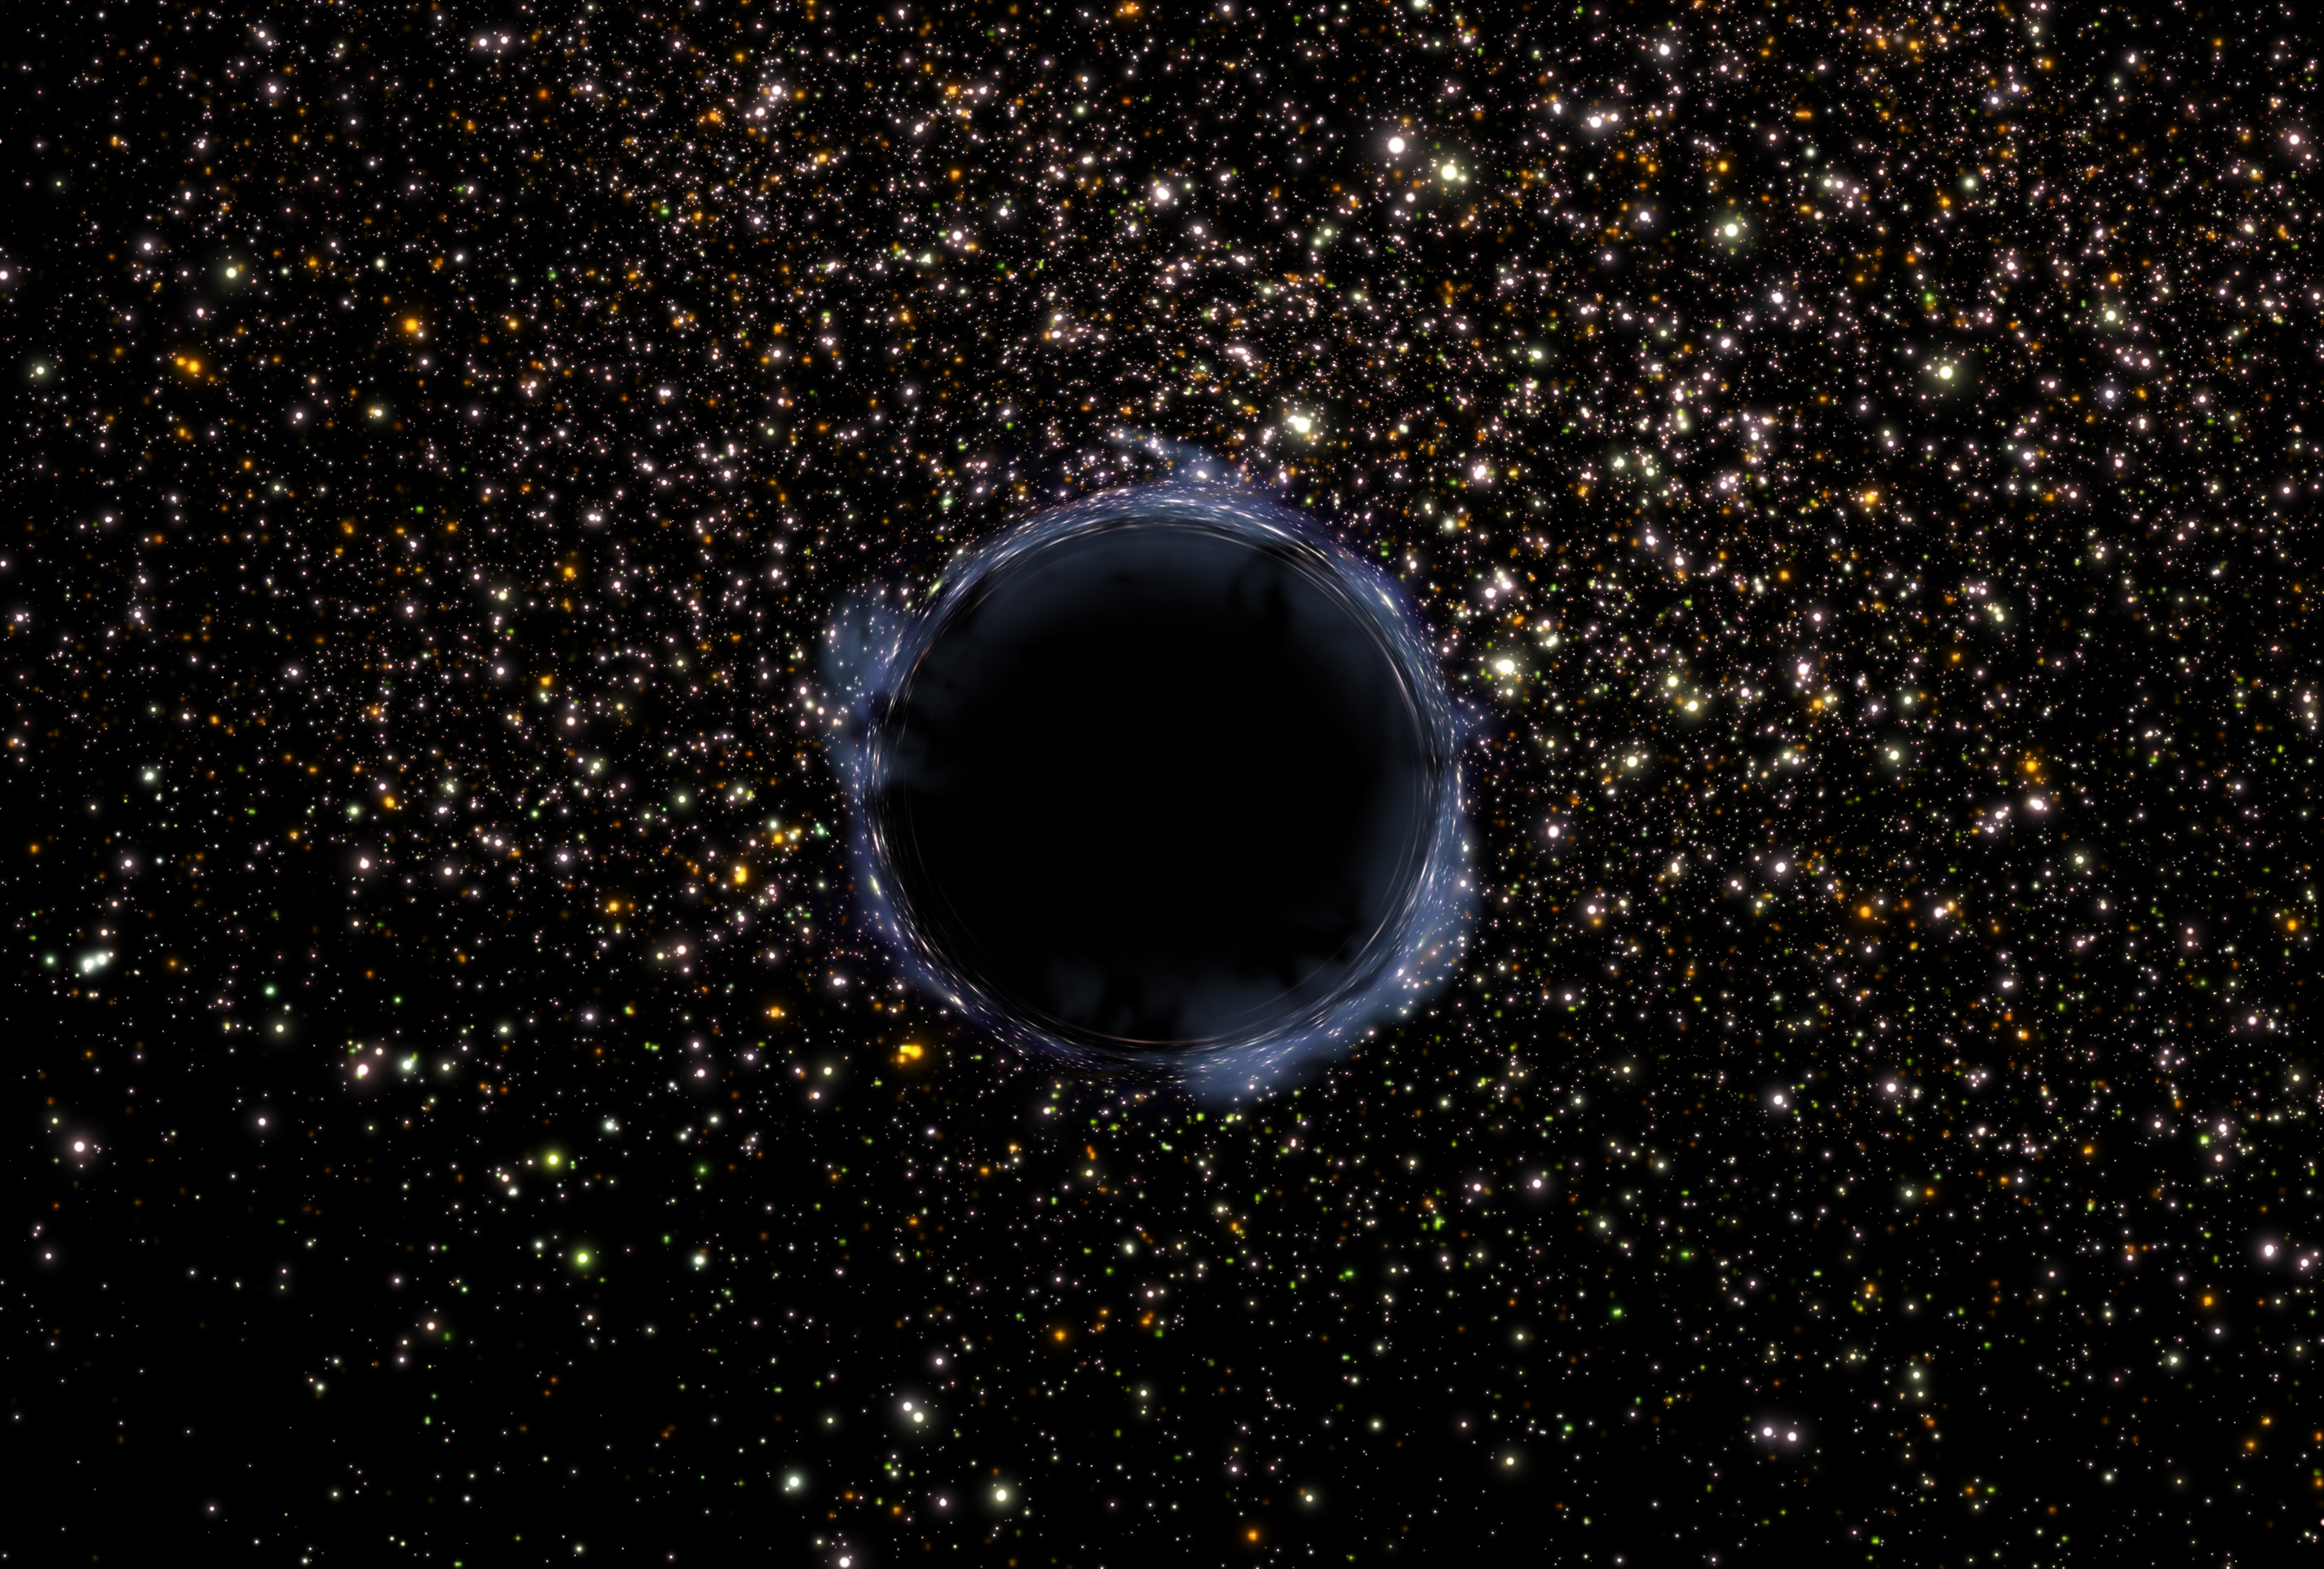 Recreación artística de un agujero negro en un cúmulo estelar. Crédito: NASA/ESA y G. Bacon (STScI).